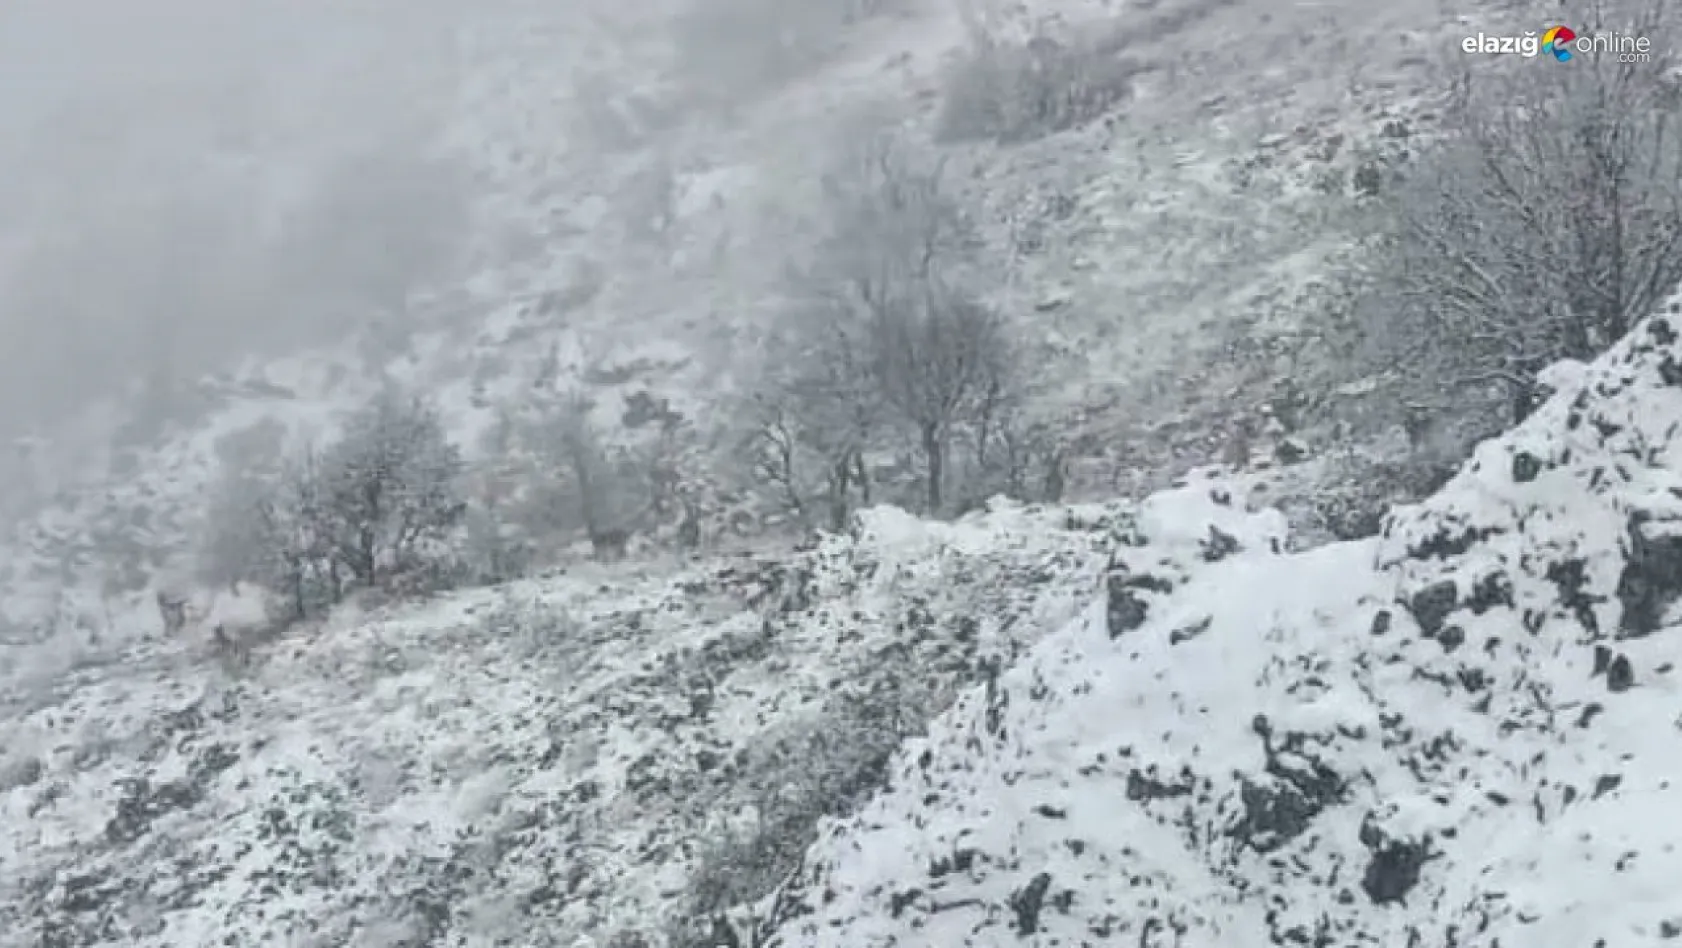 Karlı dağlarda yem arayan yaban keçileri görüntülendi